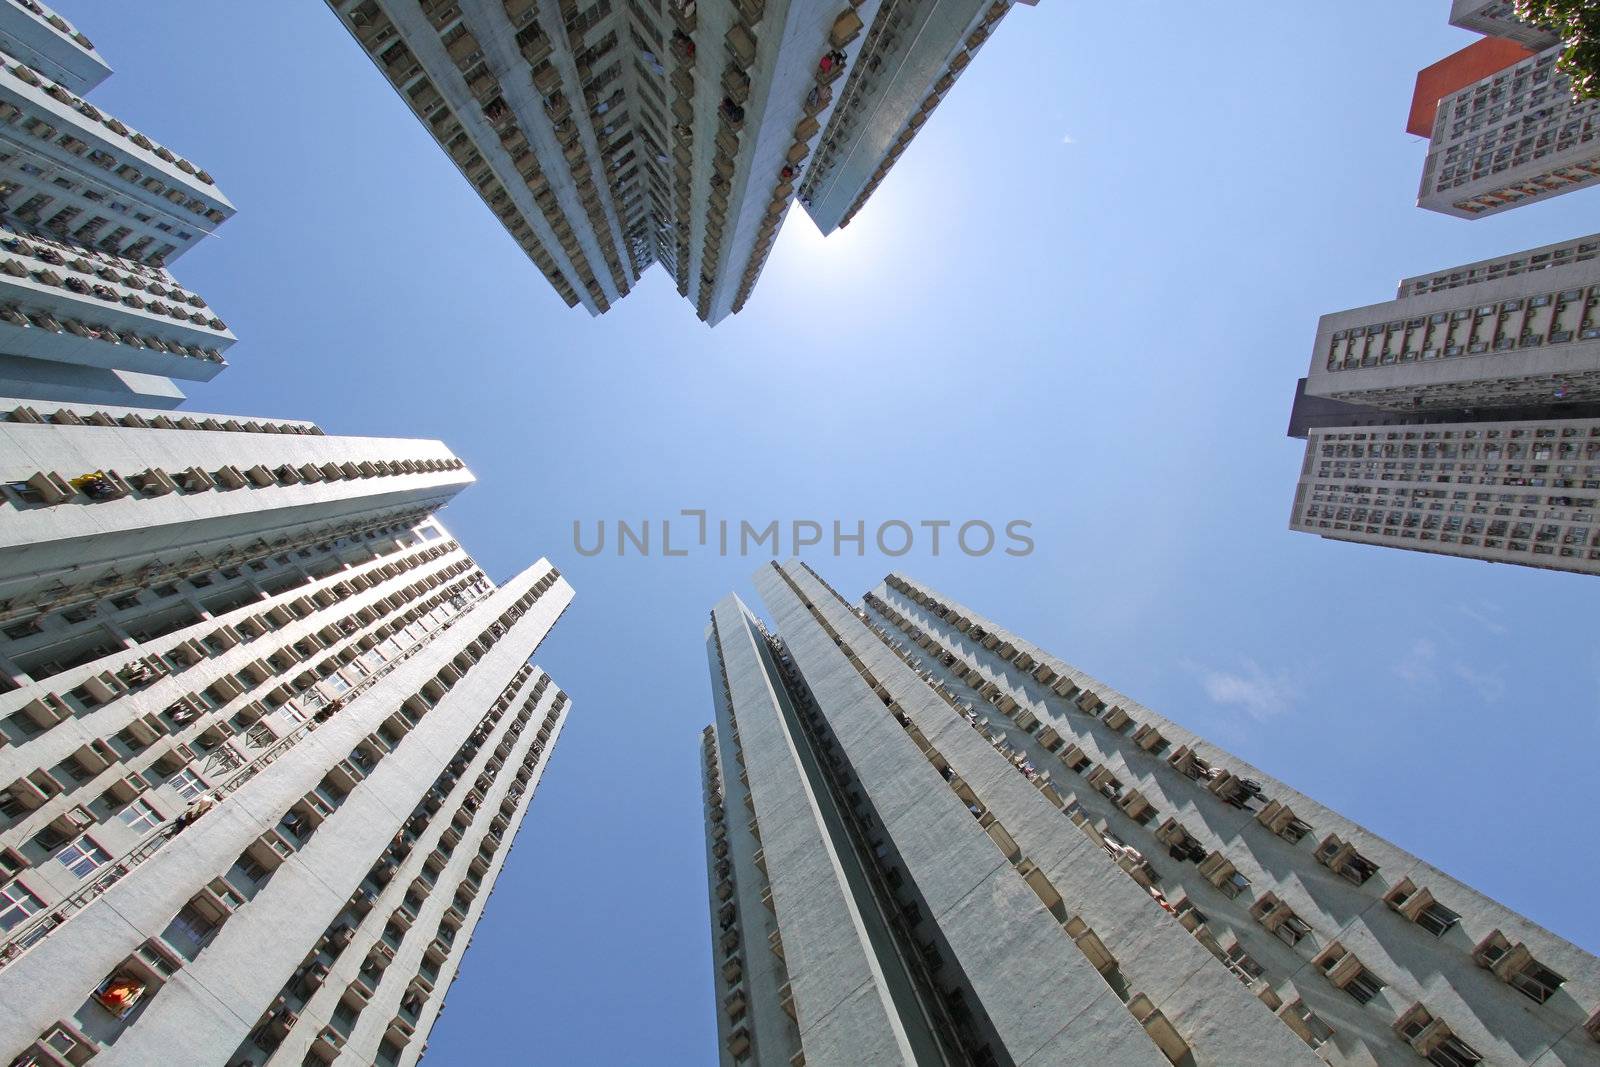 Hong Kong crowded housing apartments